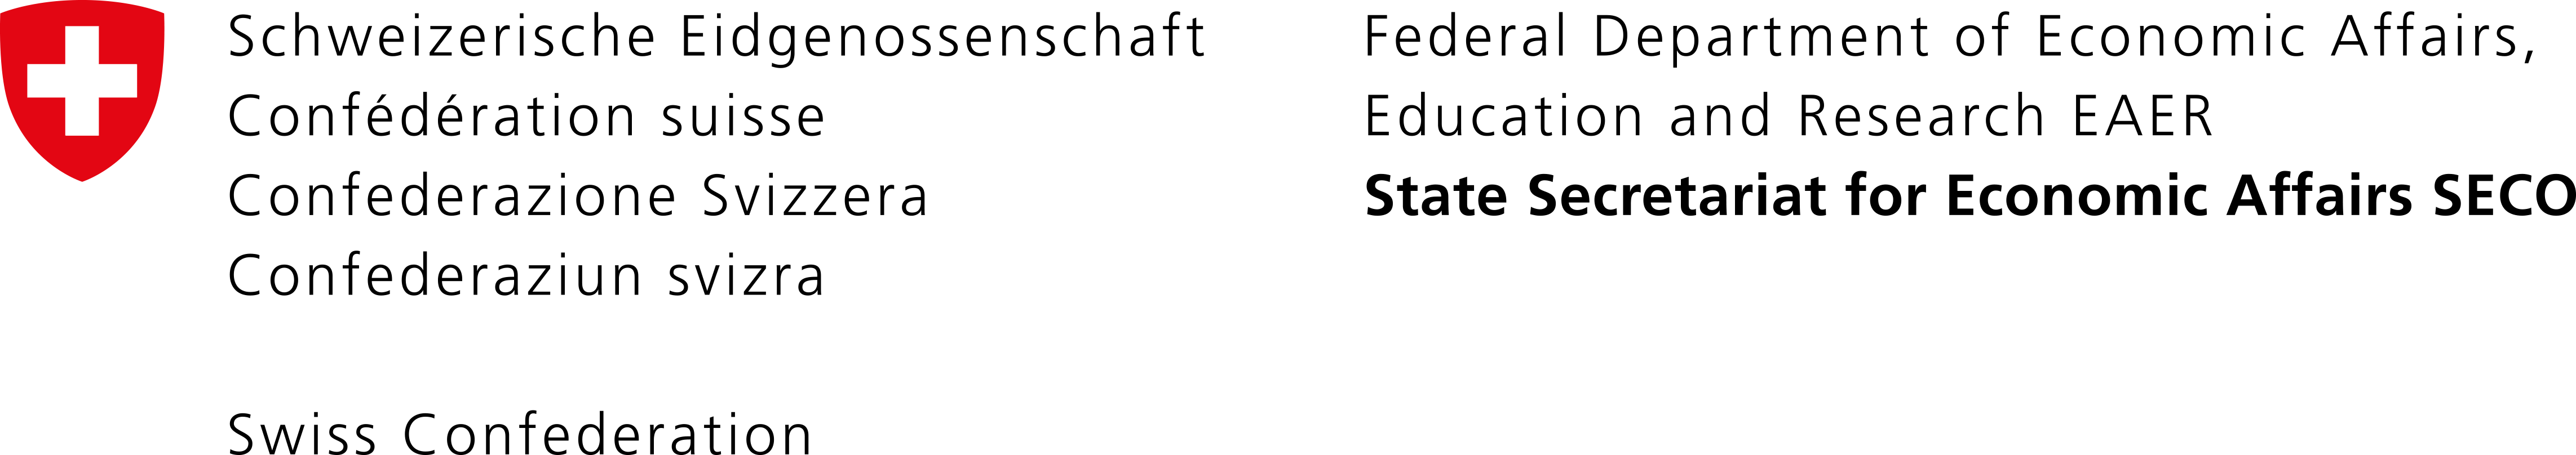 SECO logo transparent